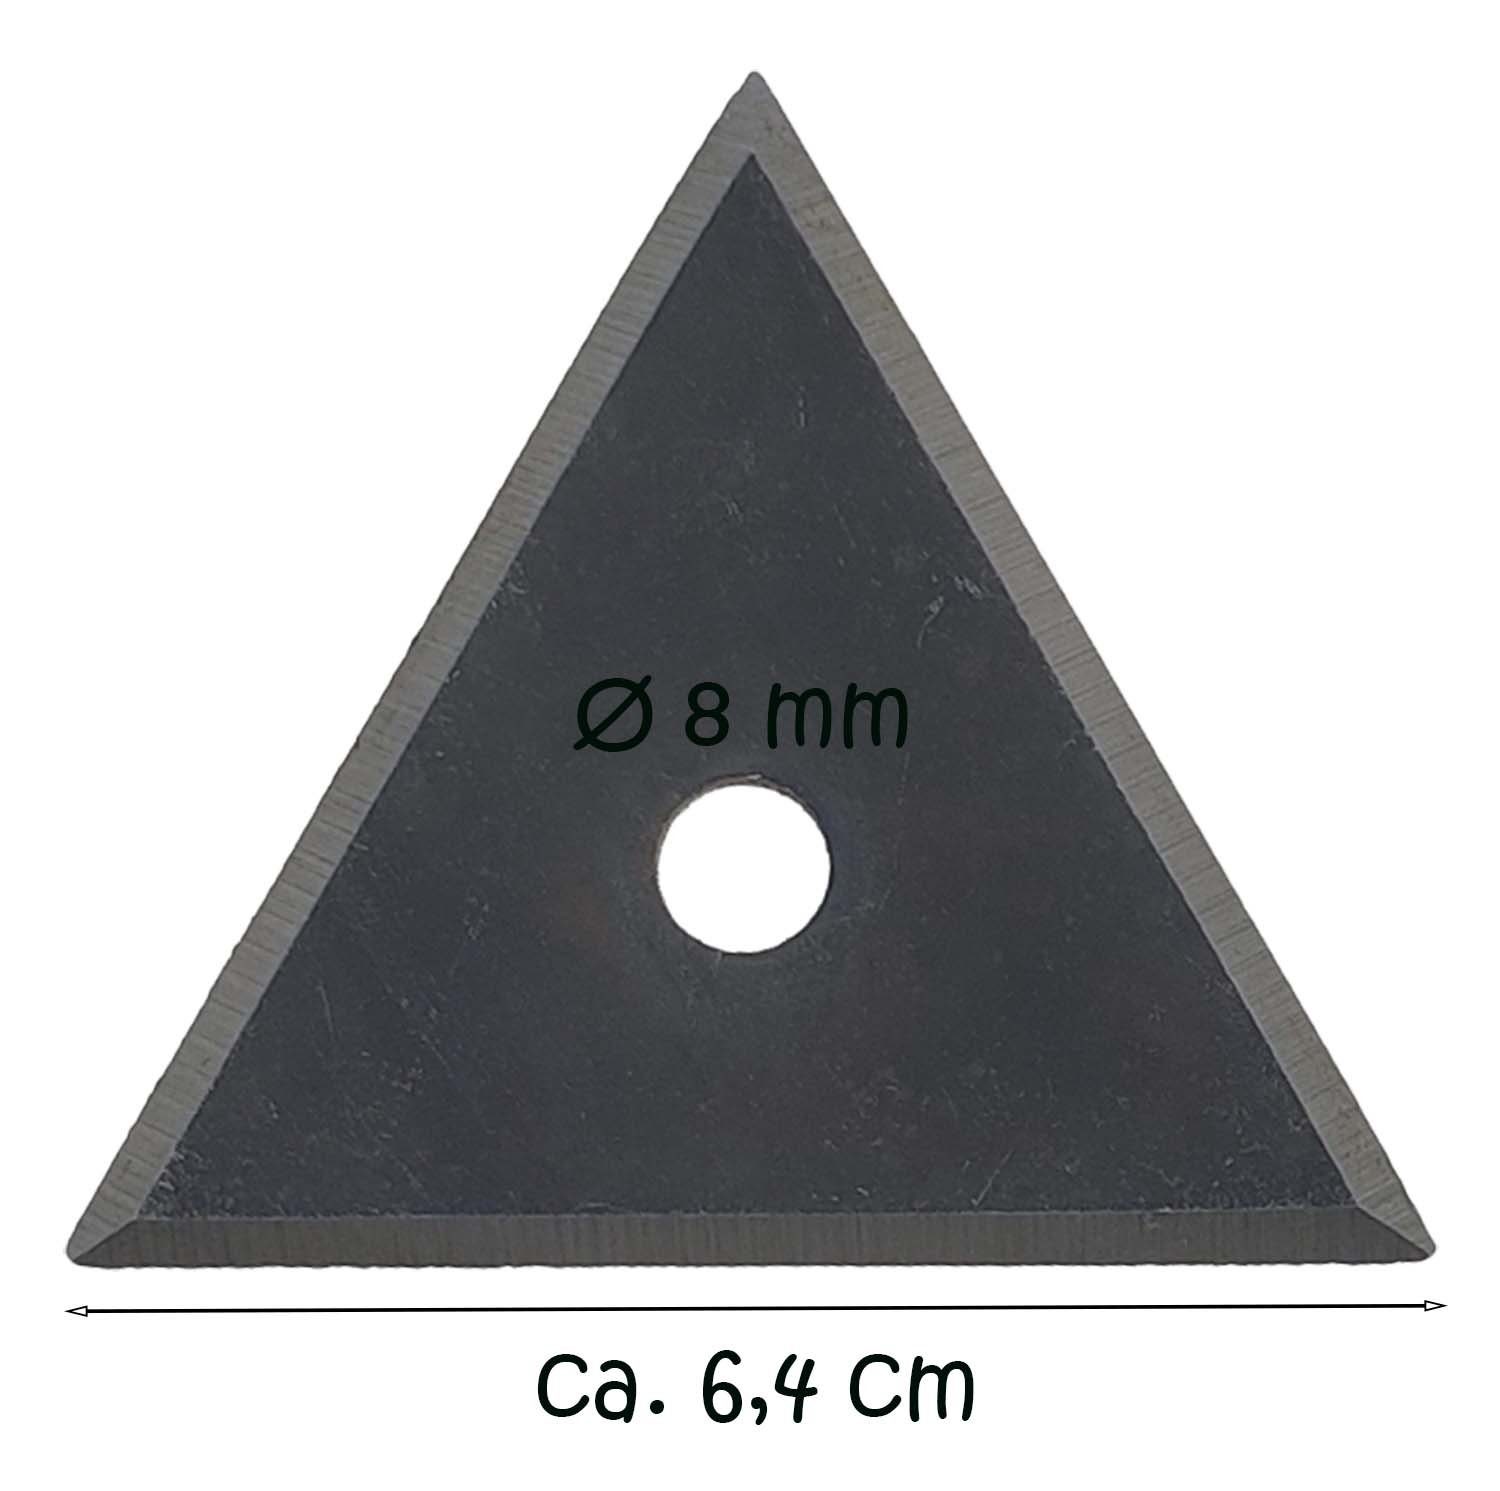 Dreikant Ersatzklinge Cuttermesser Schaber Zugschaber für Glasschaber Farbschaber